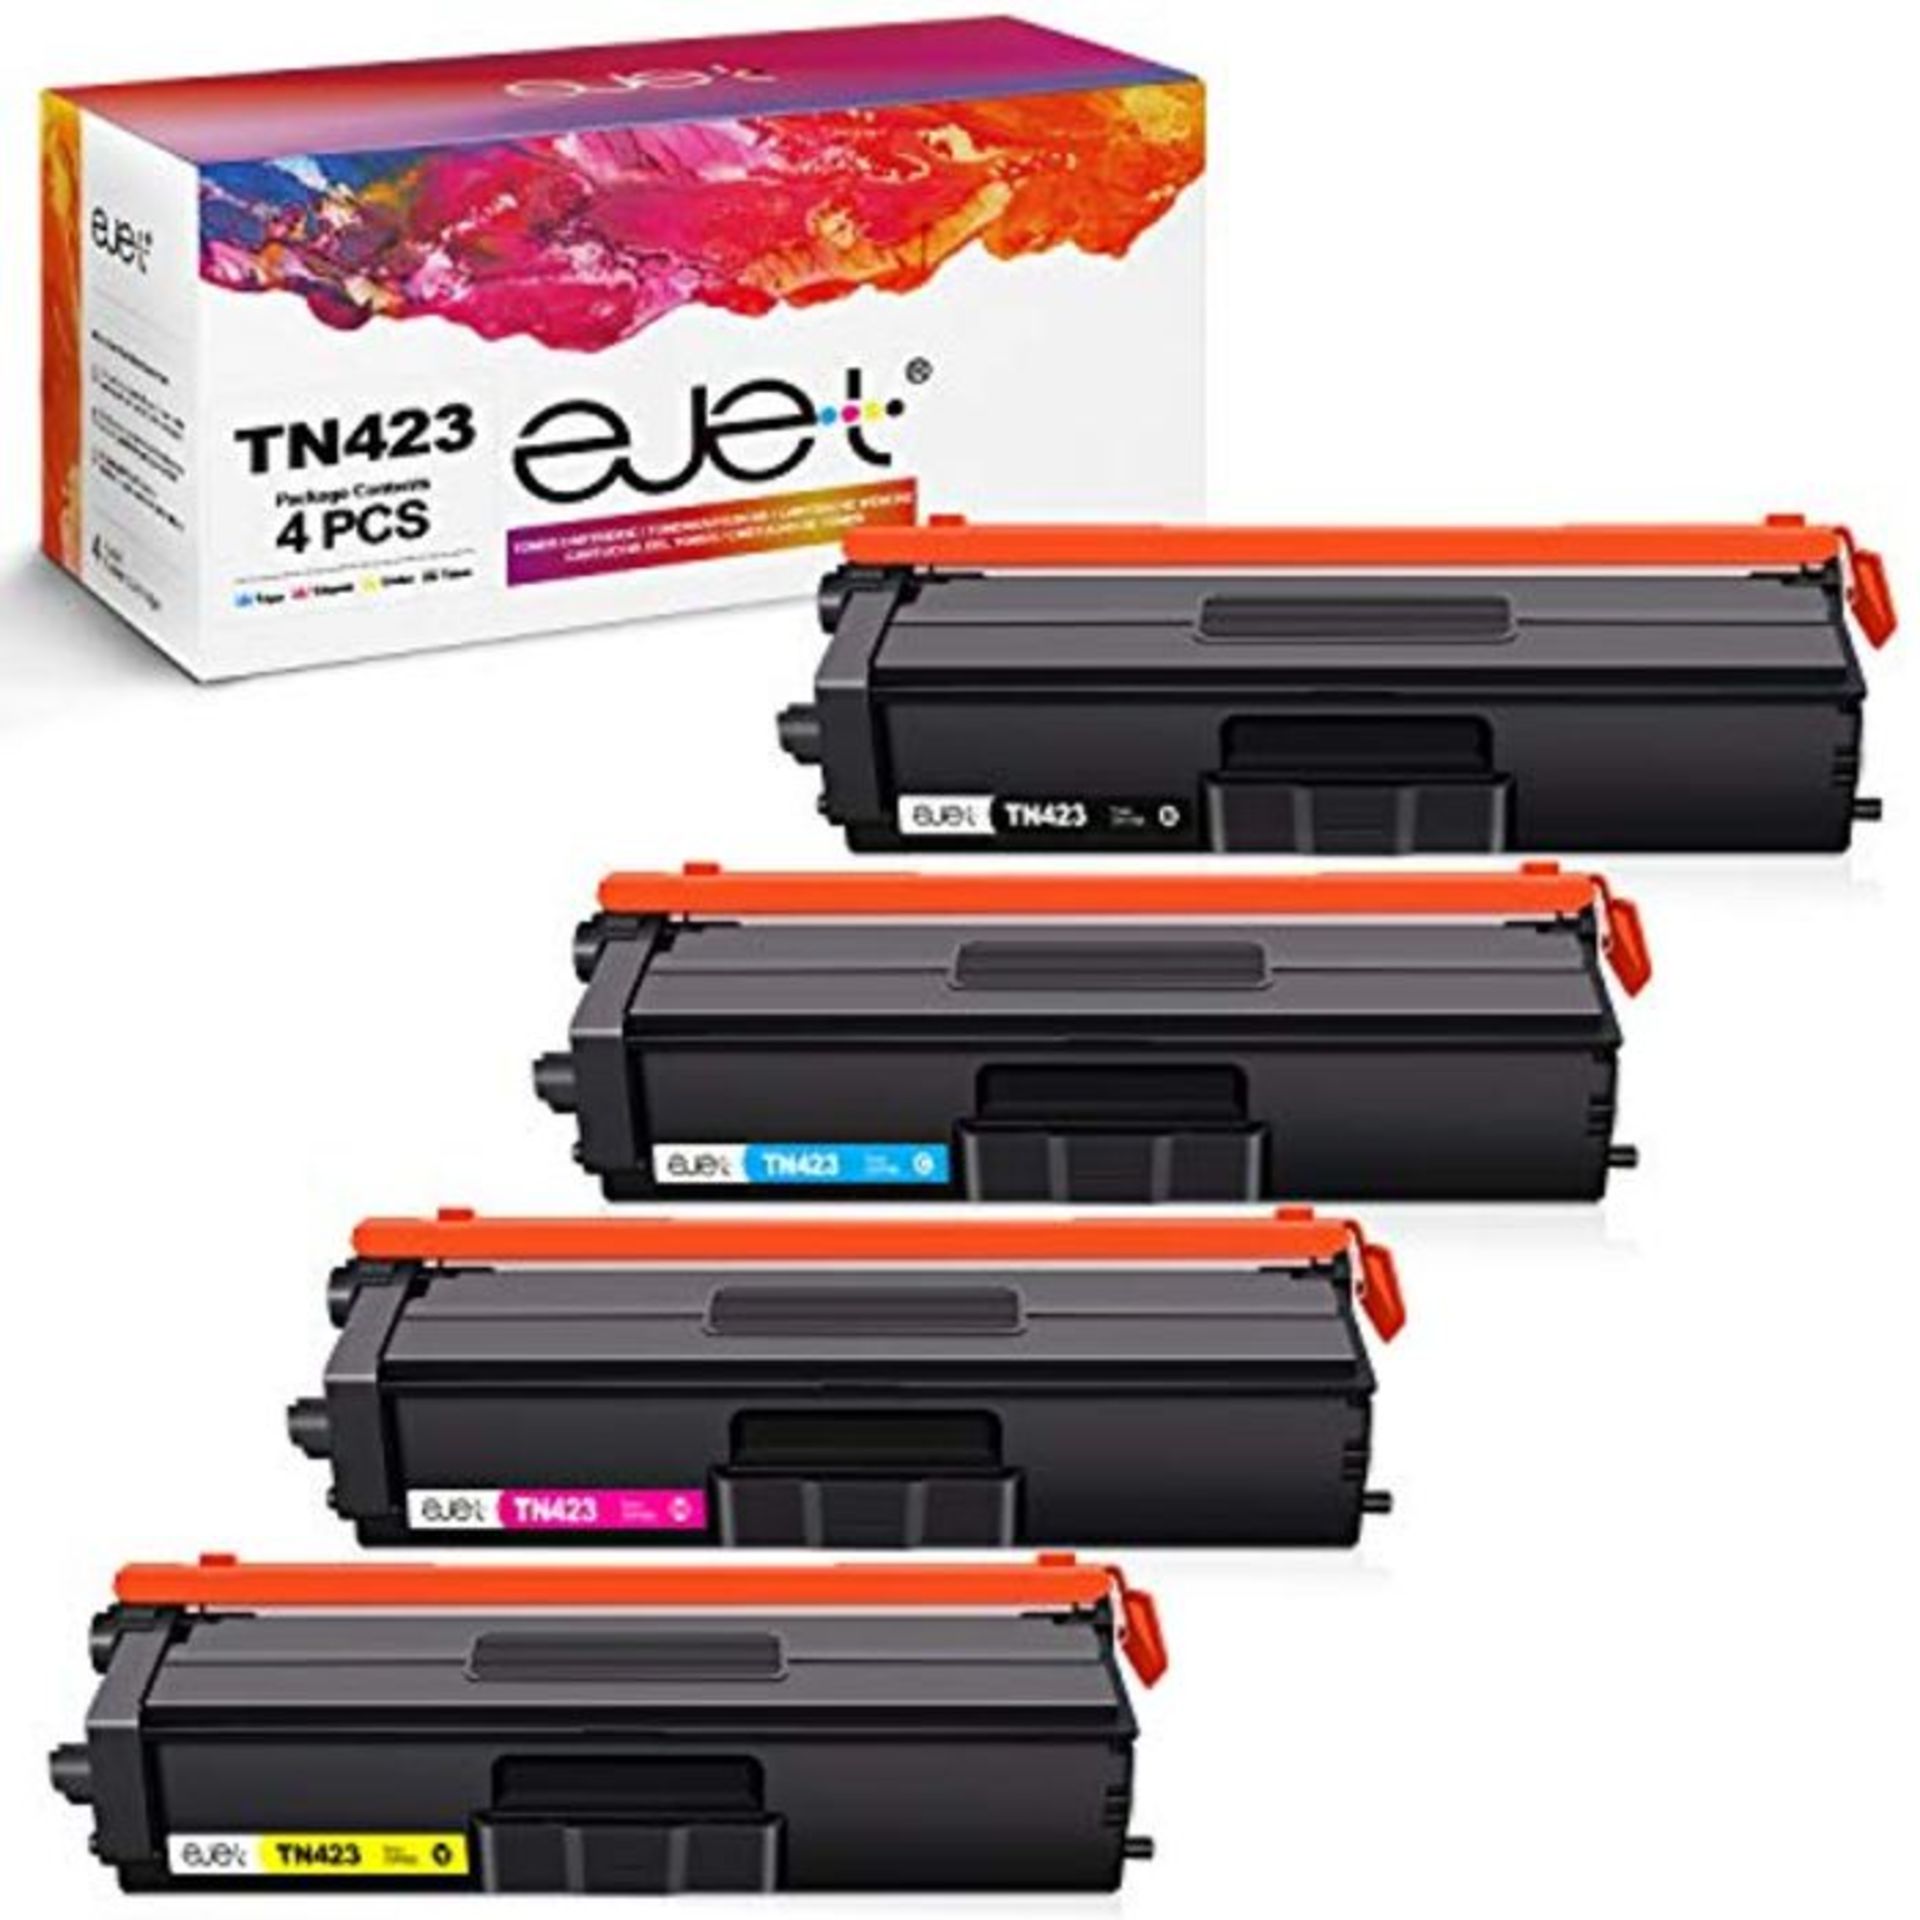 ejet TN423 TN421 Toner Cartridges for Brother TN-423 TN-421 for HL-L8260CDW HL-L8360CD